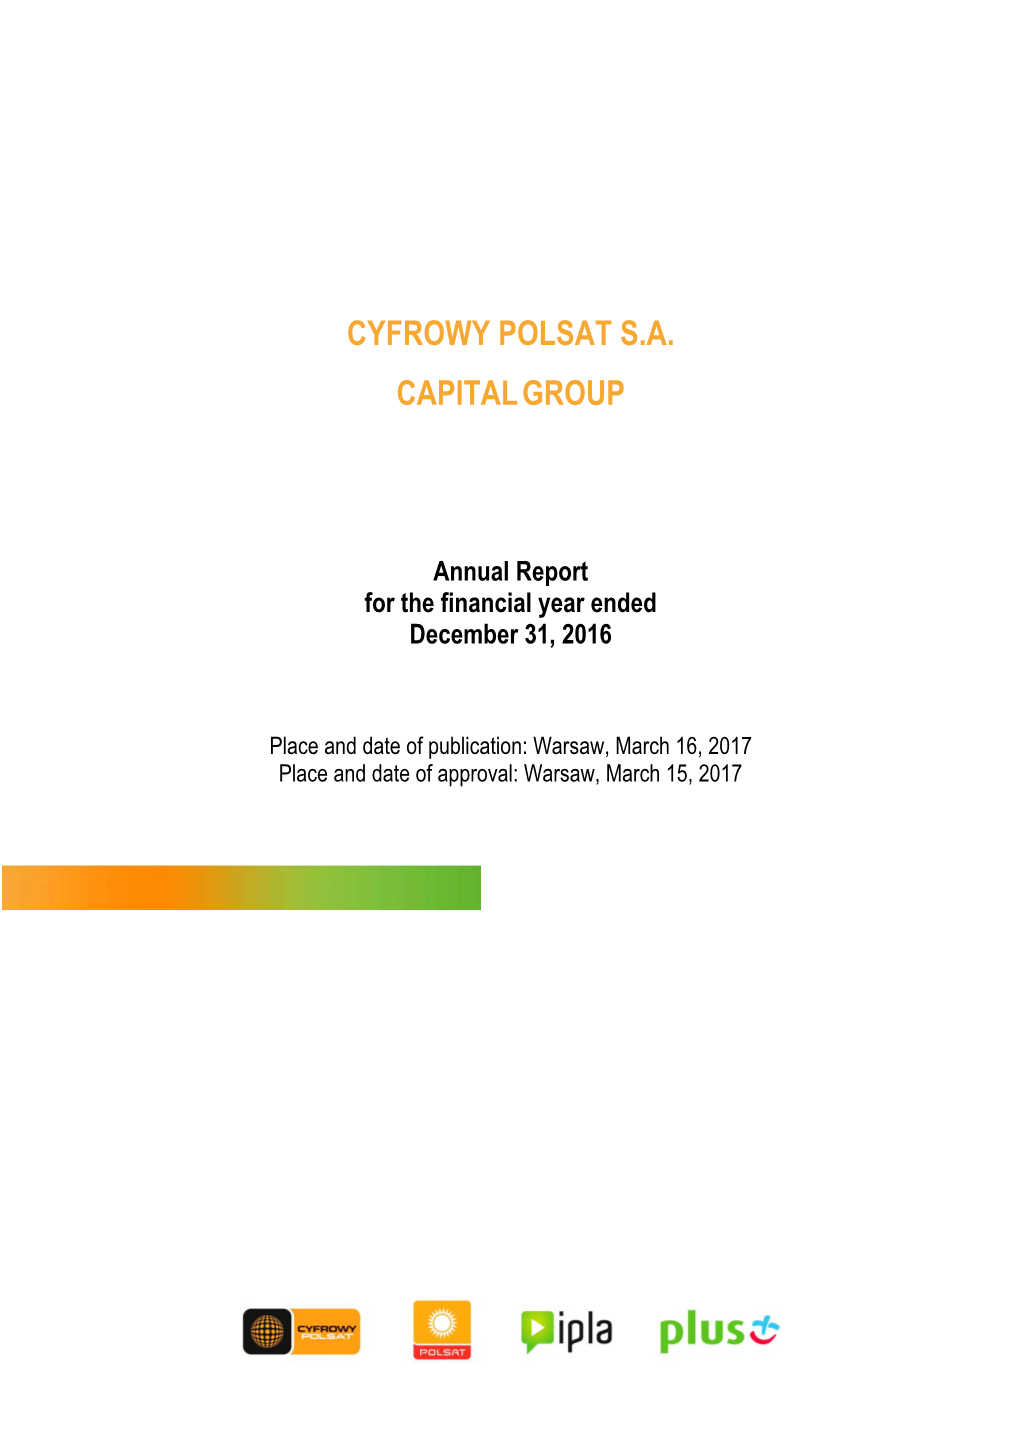 Cyfrowy Polsat Sa Capitalgroup